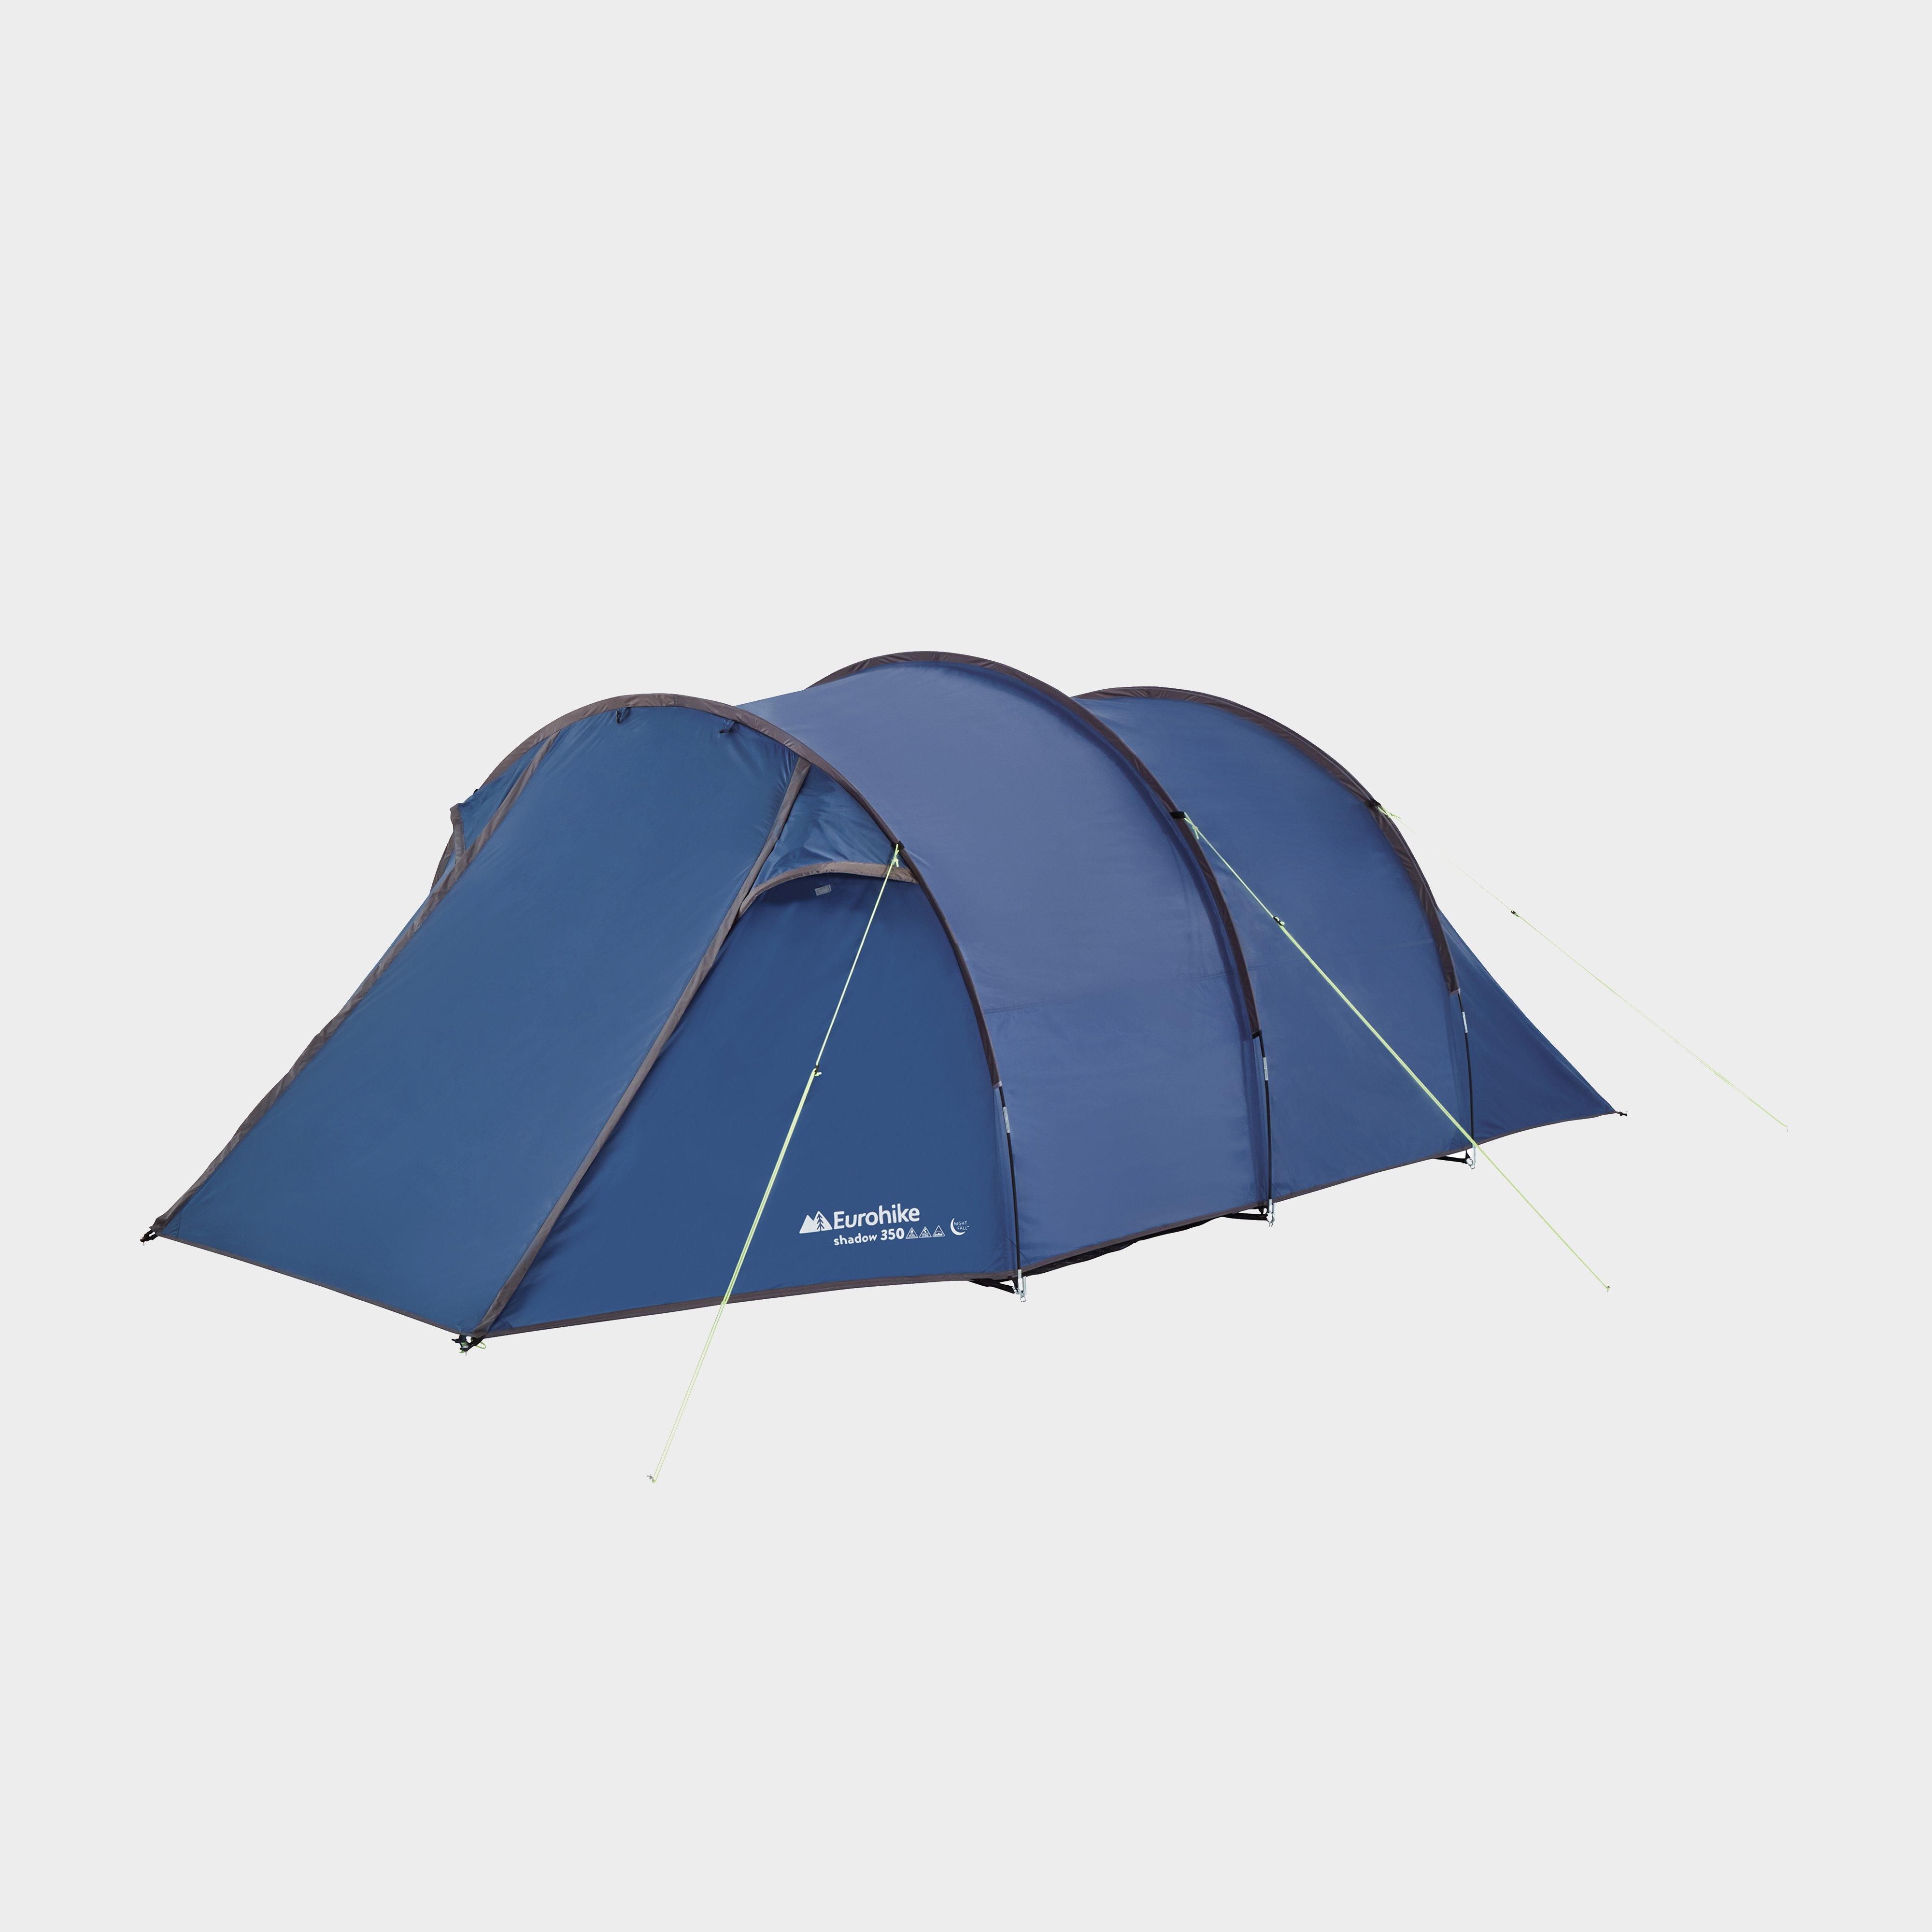 Eurohike Eurohike Shadow 350 Nightfall Tent - Blue, Blue